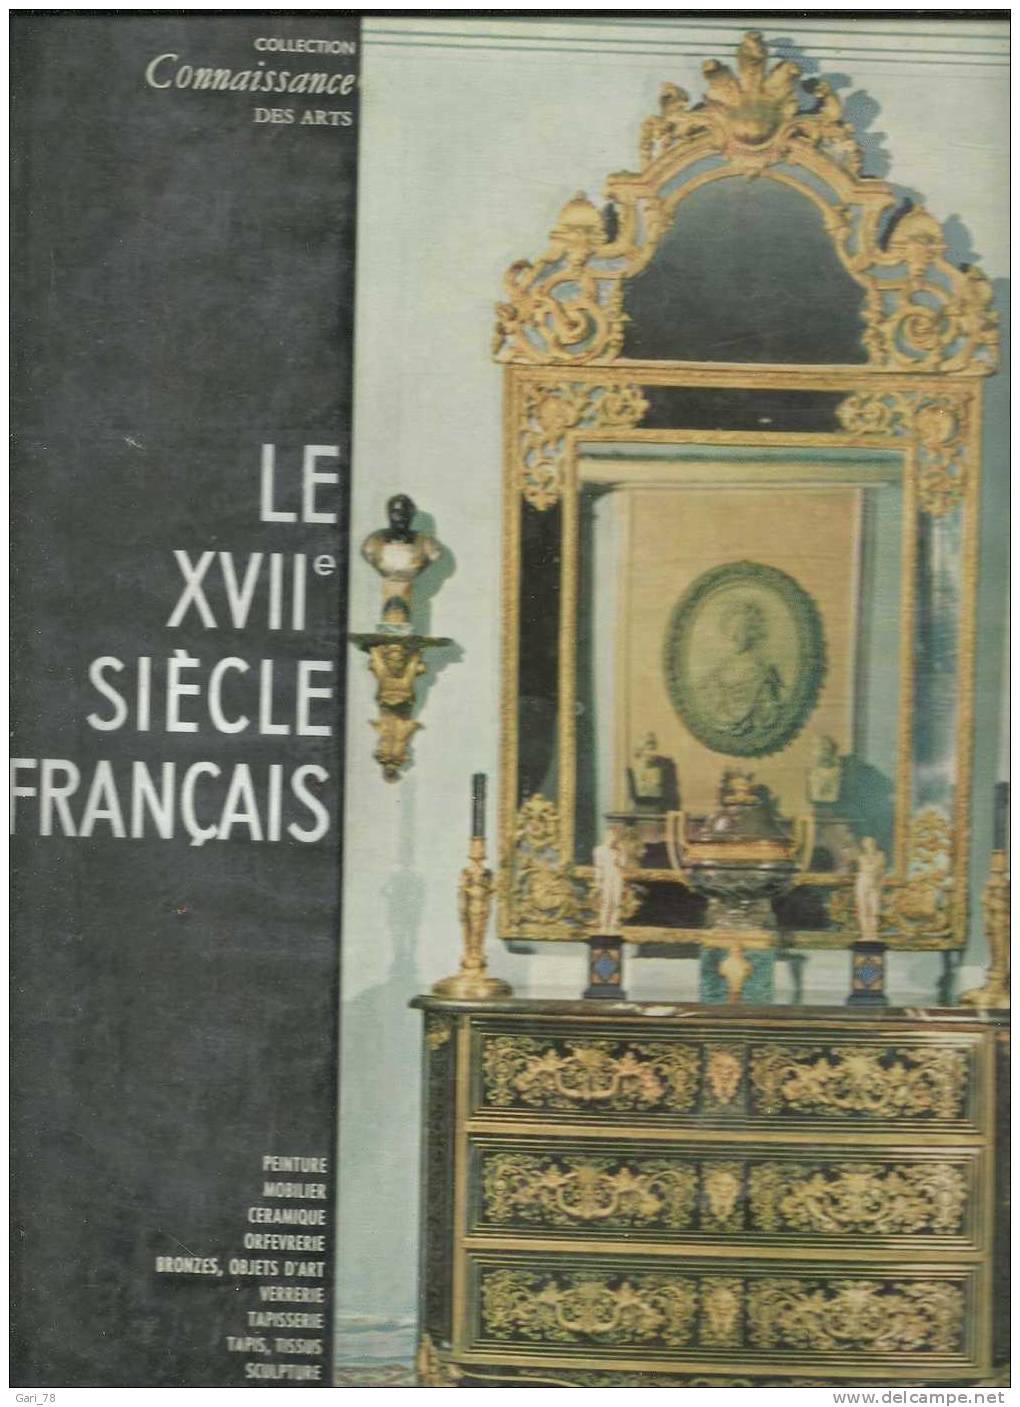 LE XVIIe Siècle Français Par Stéphane FANIEL - Collection Connaissance Des Arts - HACHETTE 1958 - Home Decoration